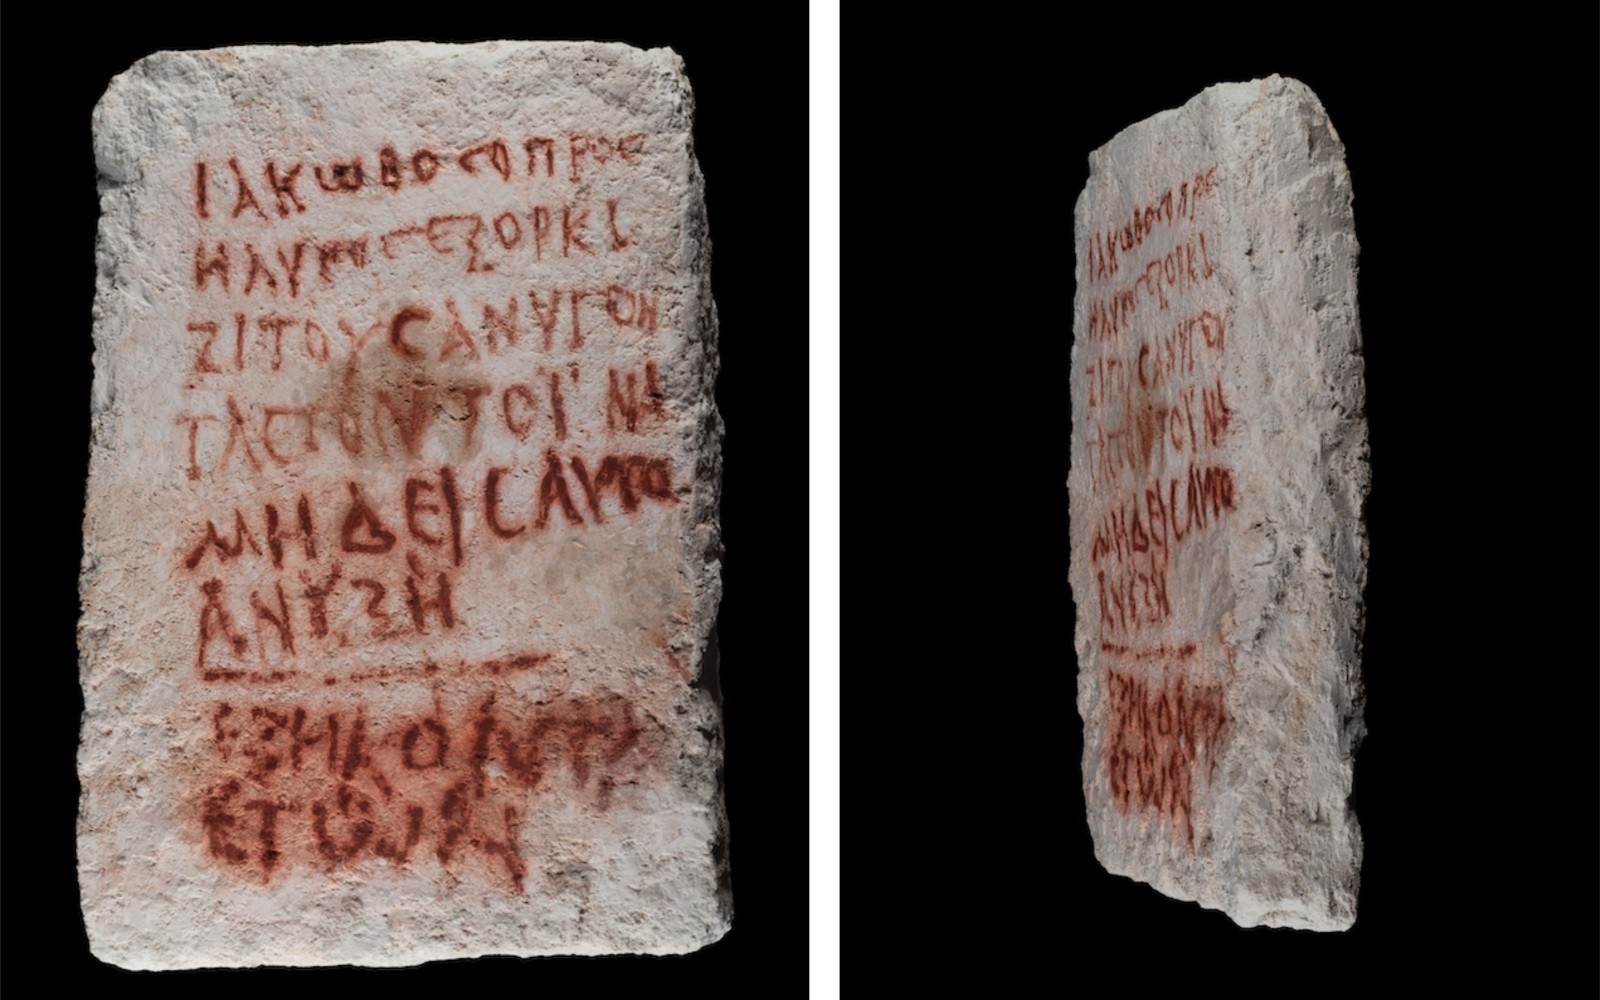 Inscrição em lápide em Israel do final do período romano e início do período bizantino; escrita deseja maldição a quem abrir sepultura  (Foto: @Israel/Twitter/Reprodução )